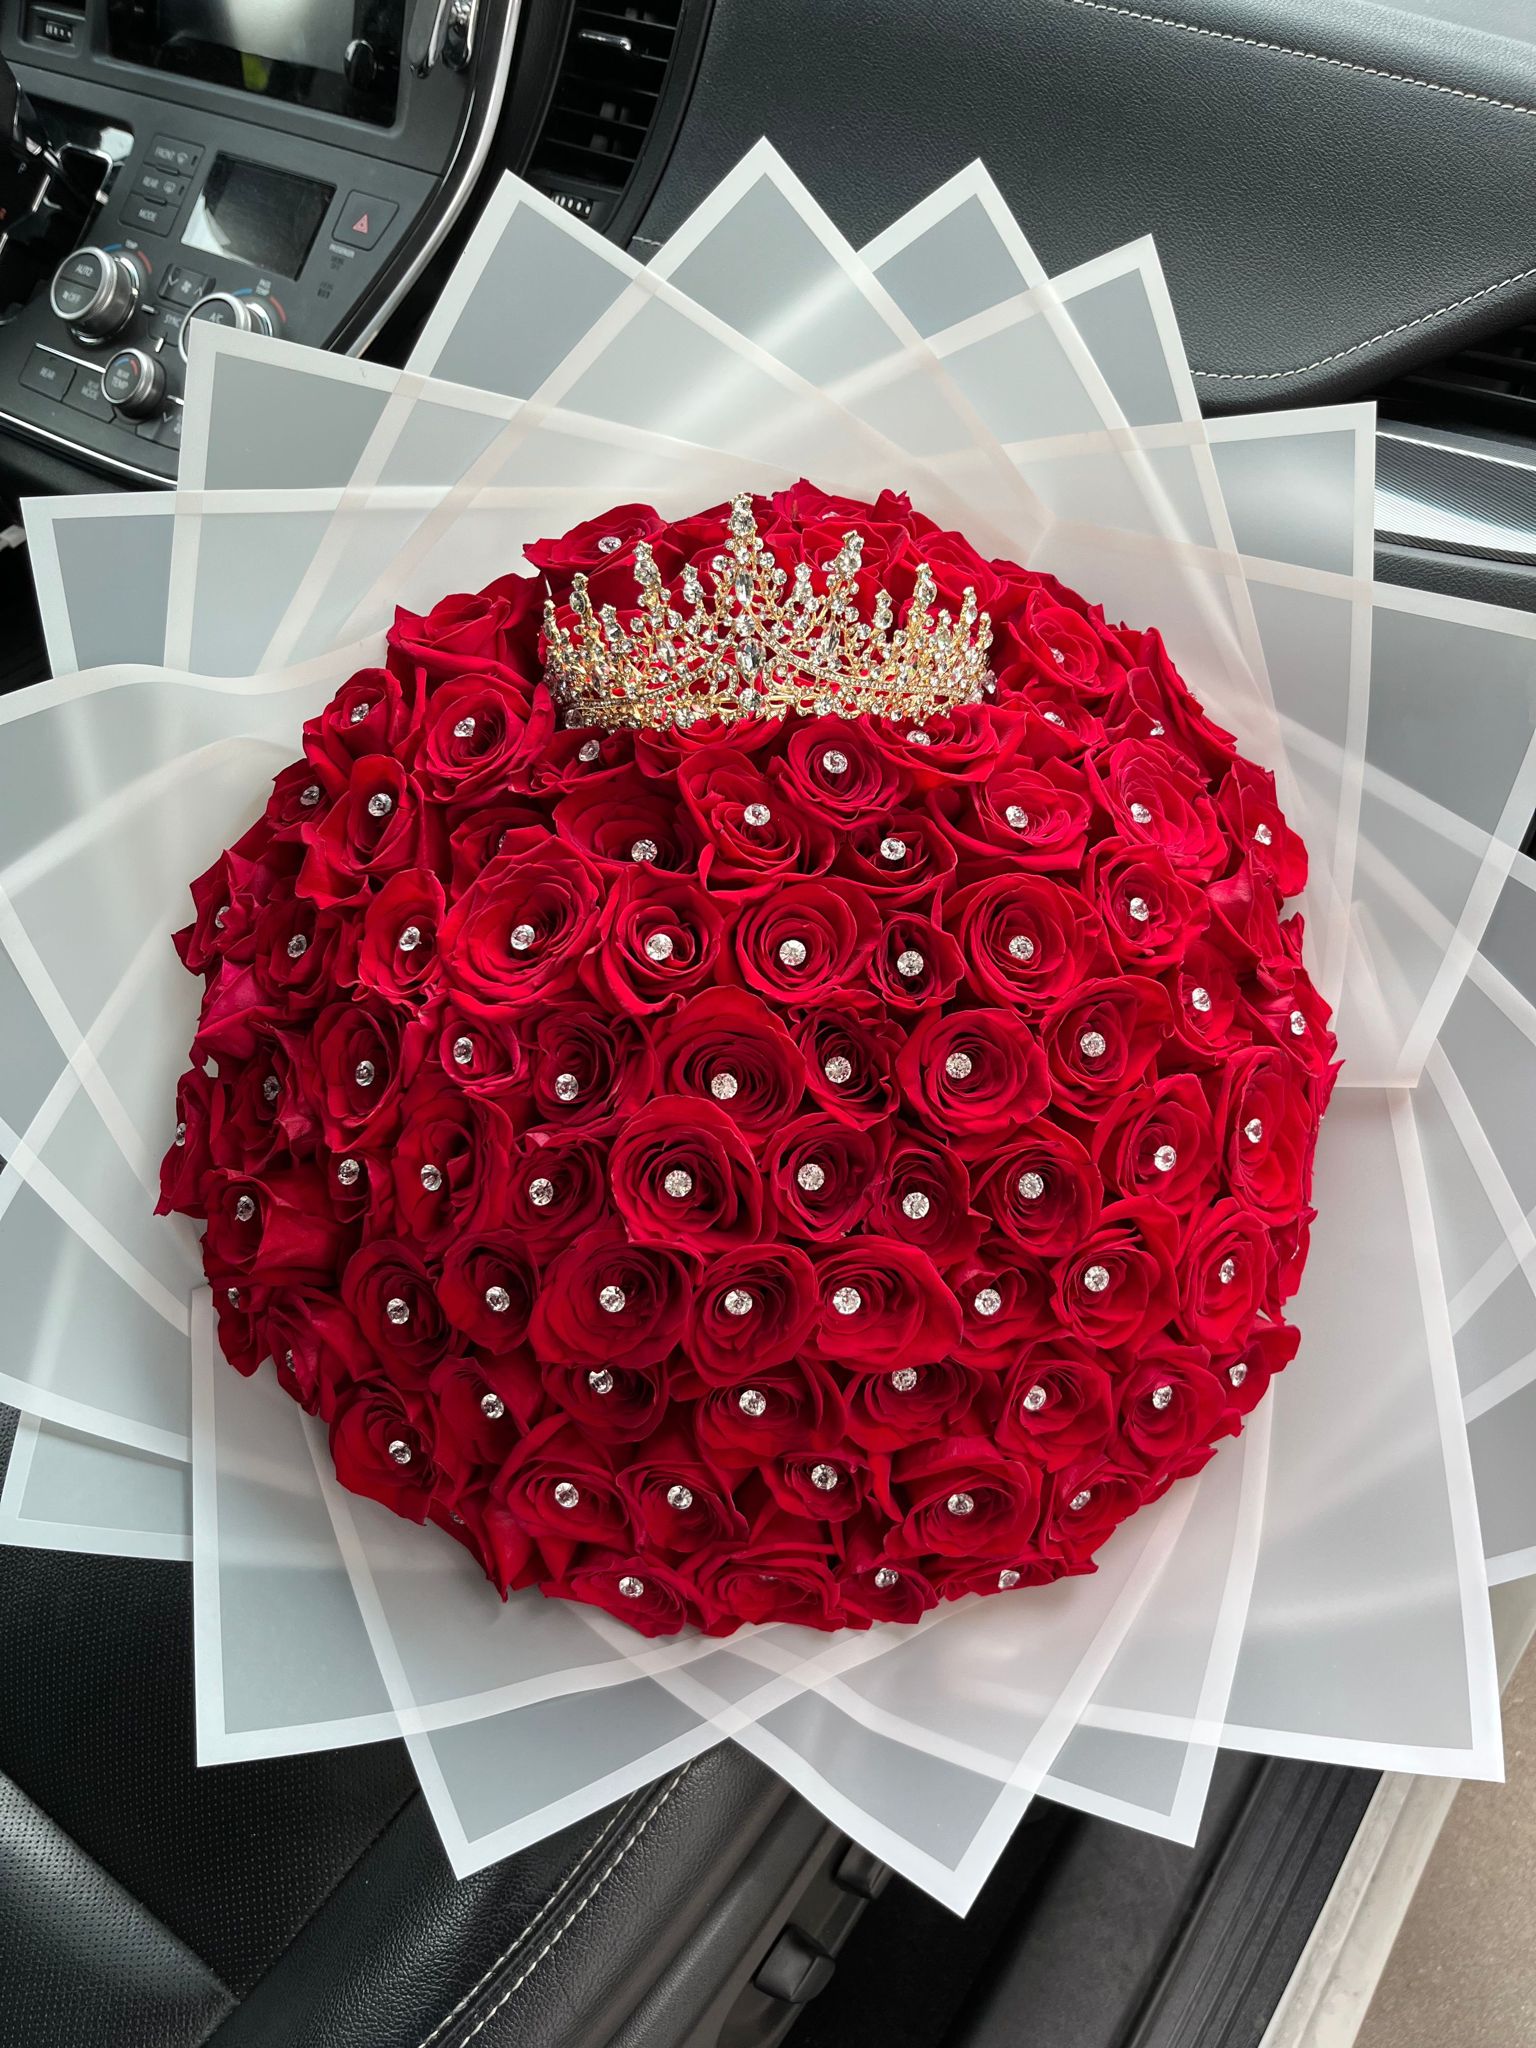 100 Roses / Luxury crown / Rhinestones